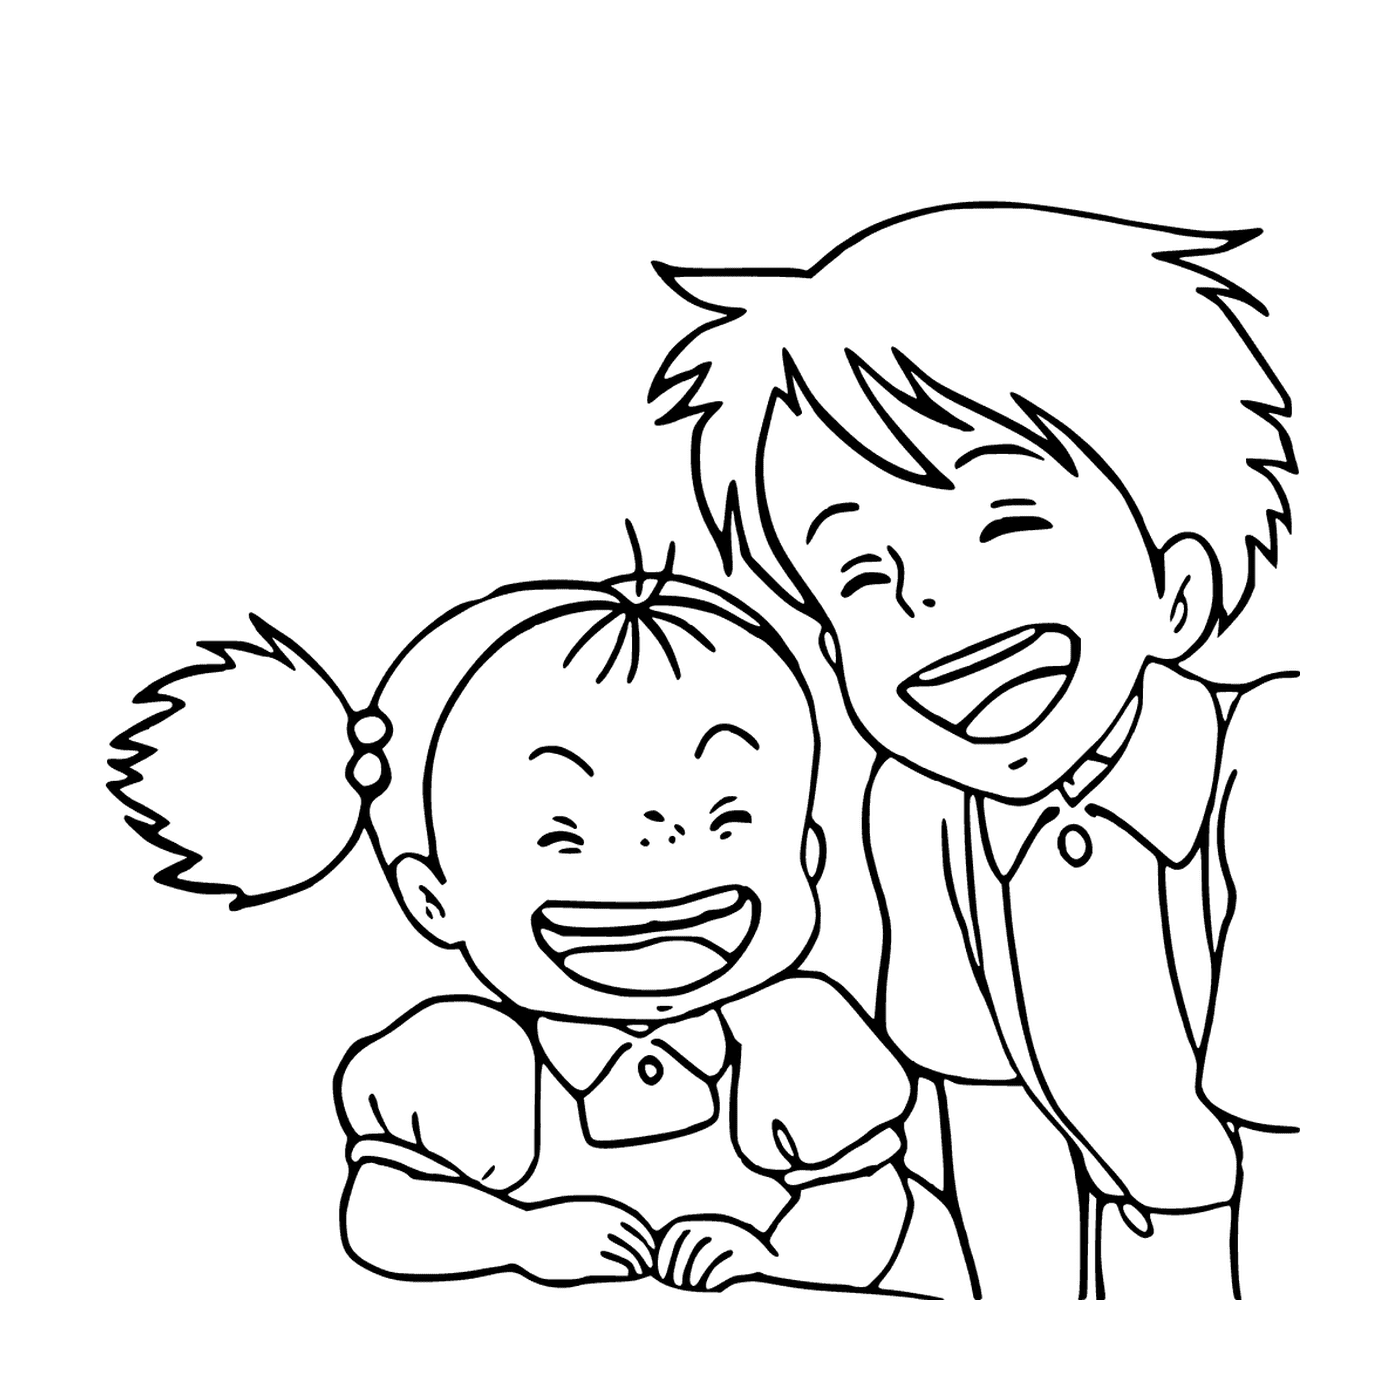  El niño y la niña se ríen juntos 